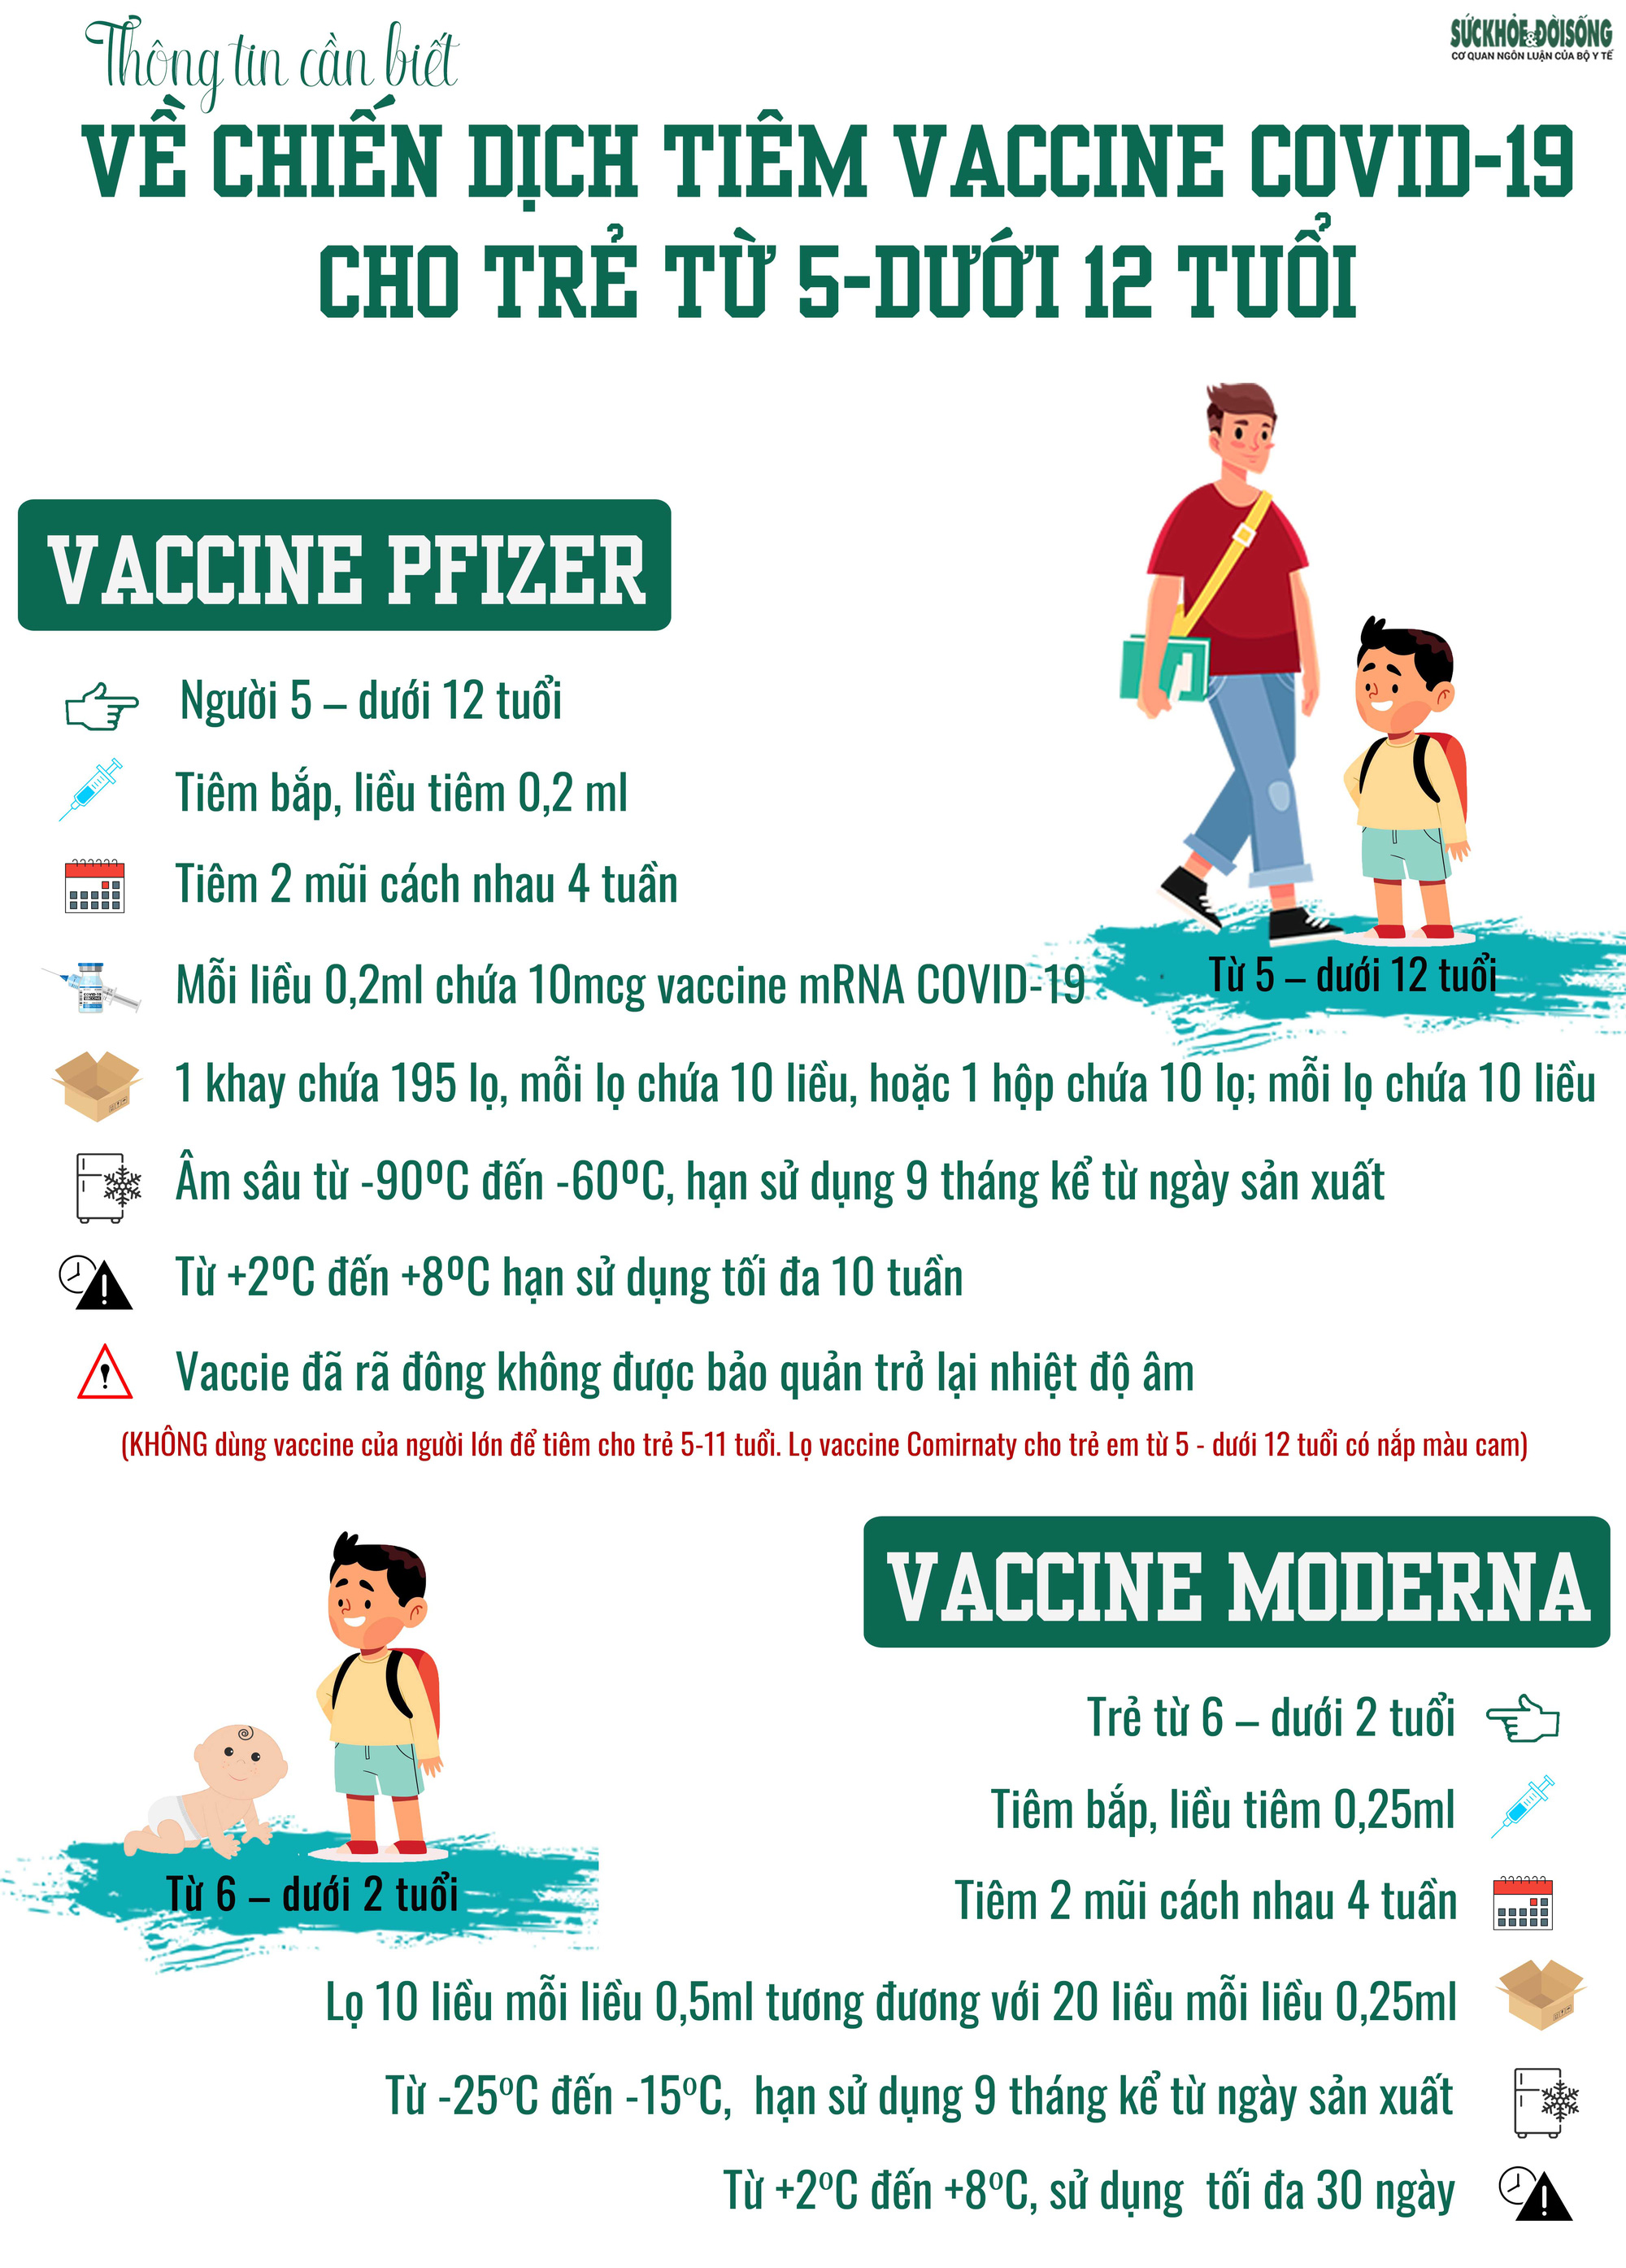 Tiêm vaccine phòng COVID-19 cho trẻ từ 5 - dưới 12 tuổi: Nhóm nào cần trì hoãn? - Ảnh 4.